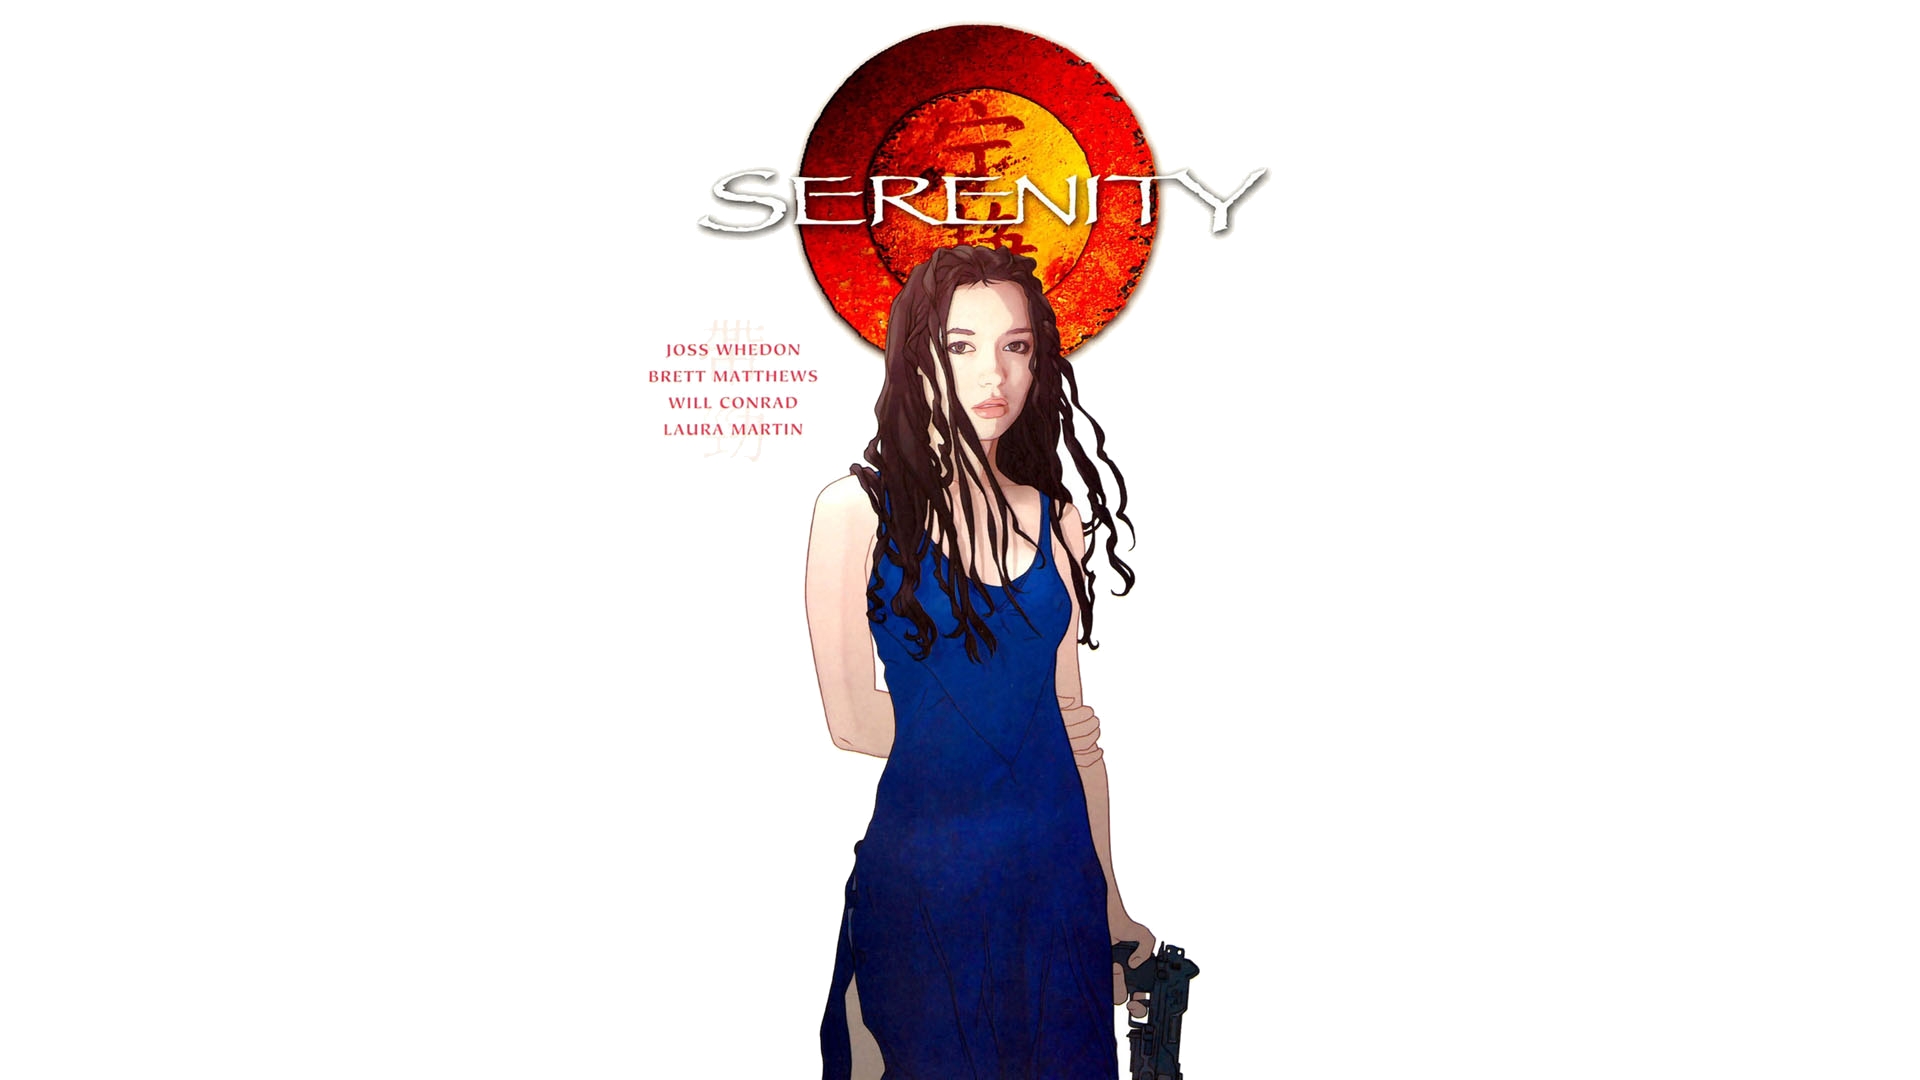 Comics Serenity 1920x1080